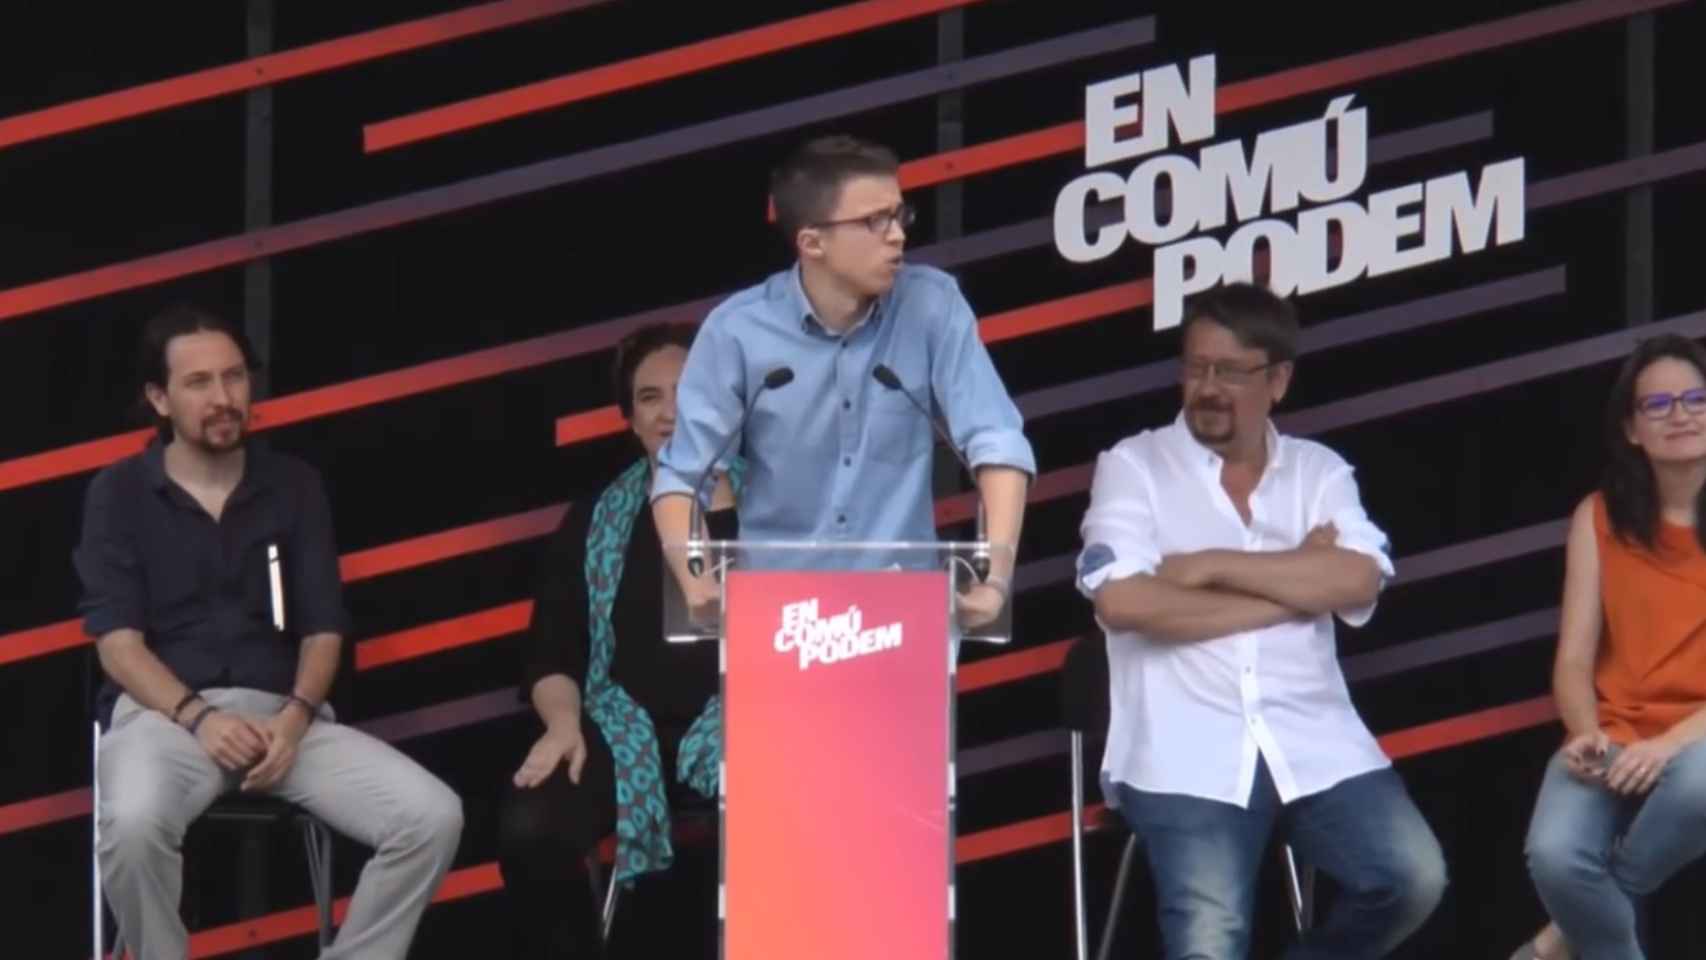 Errejón mitineando en la campaña del 26-J junto a Iglesias, Colau, Domènech y Oltra.